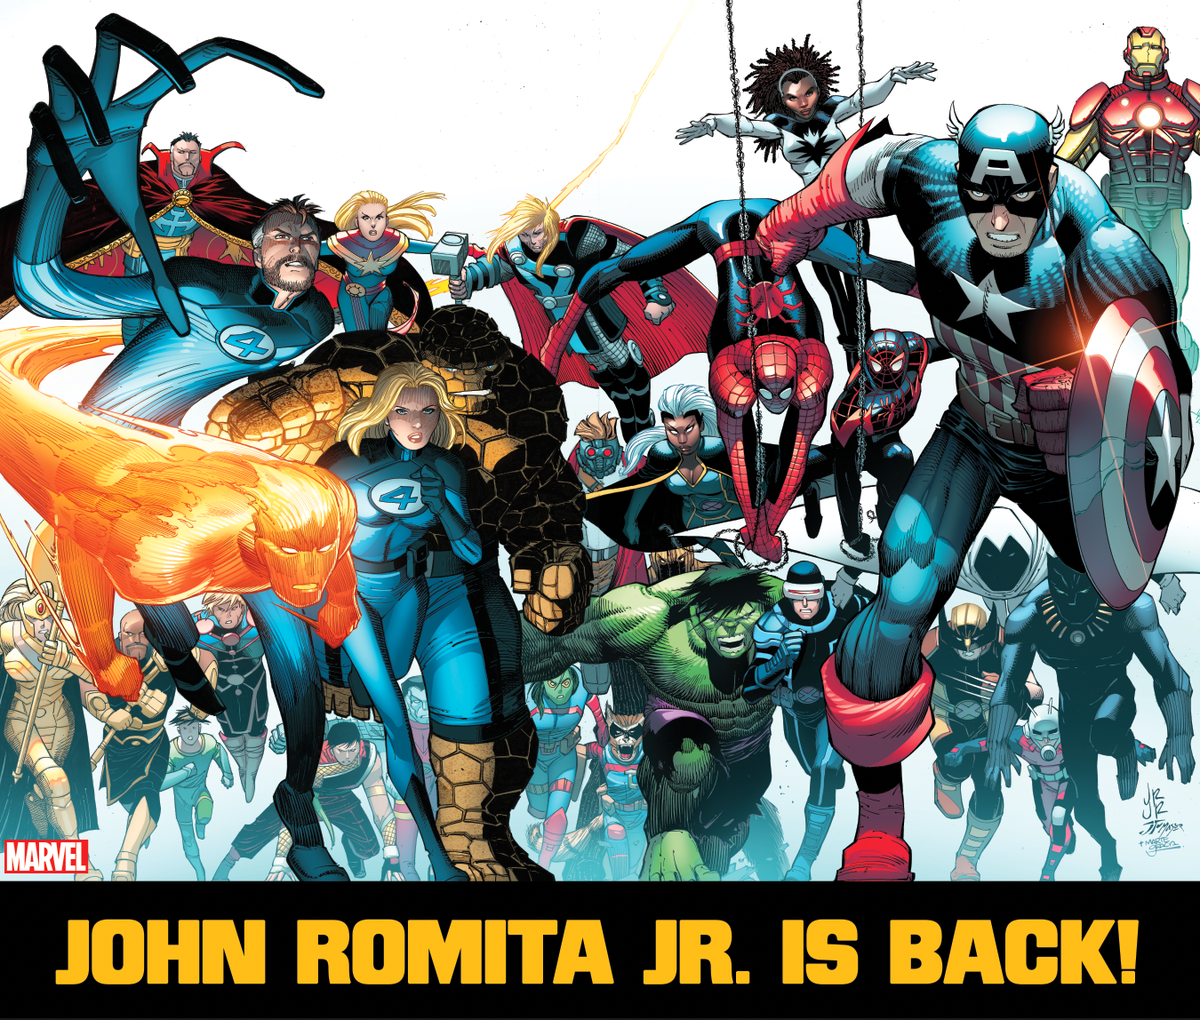 Striplegende John Romita Jr. keert deze zomer terug naar Marvel to